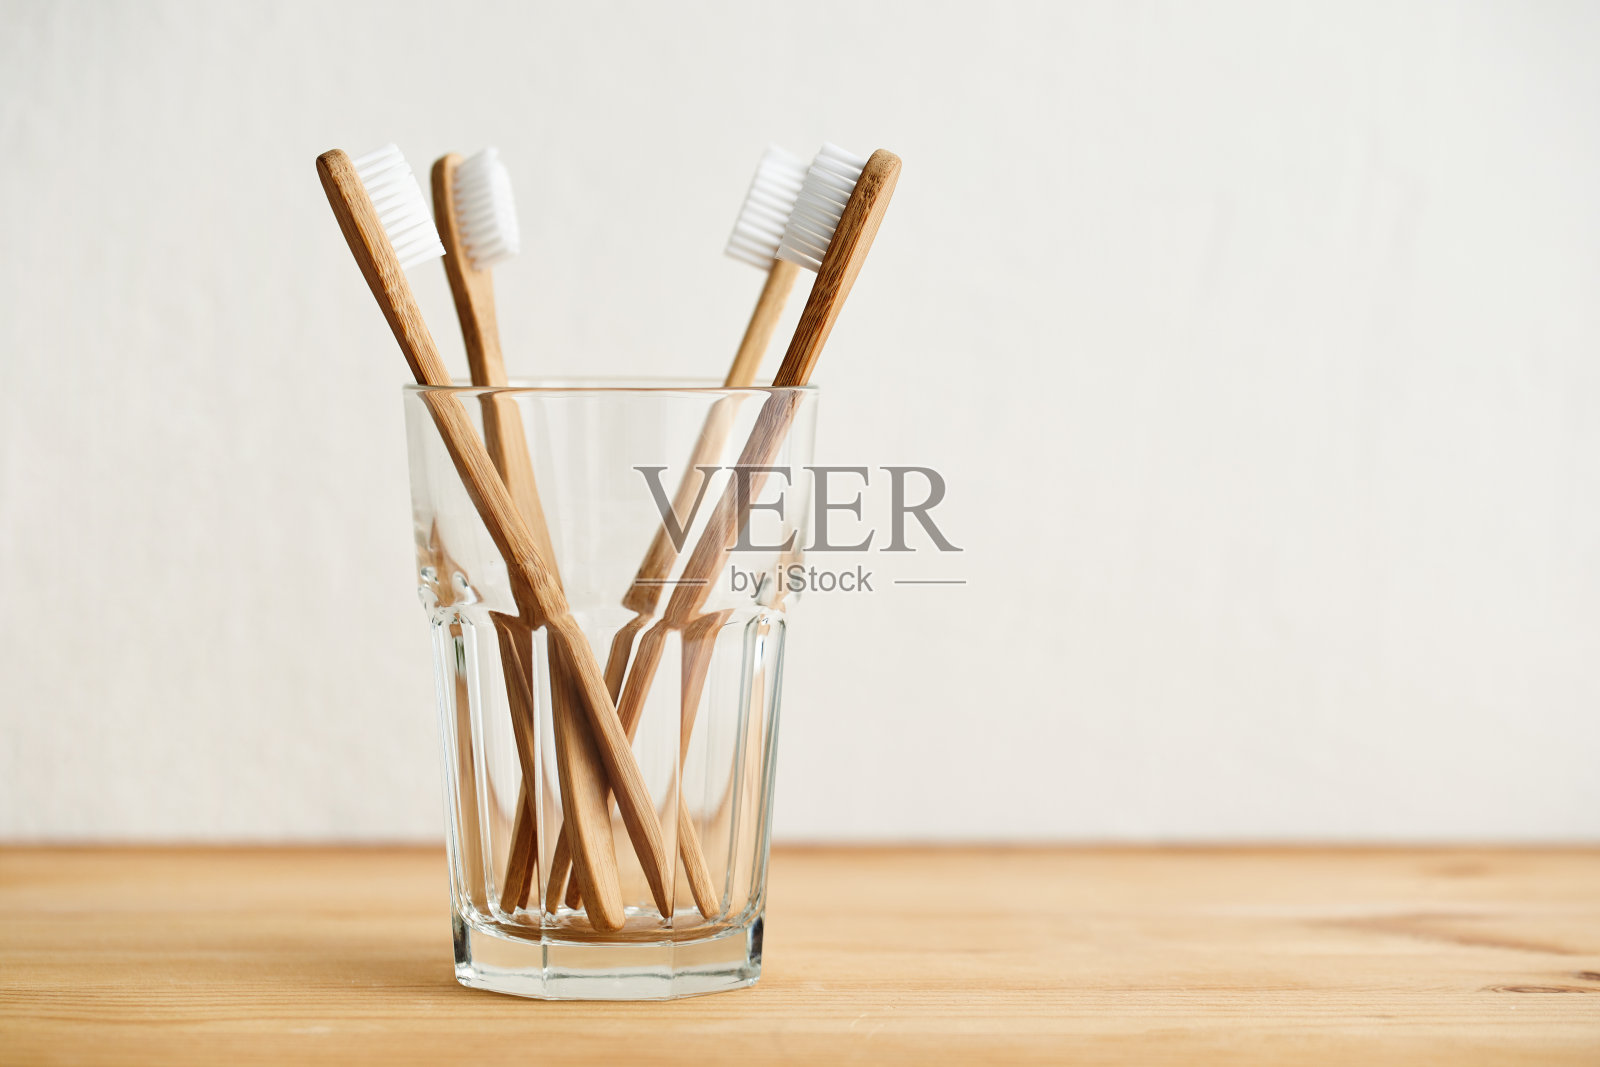 四把竹牙刷装在玻璃杯里放在一张木桌上照片摄影图片